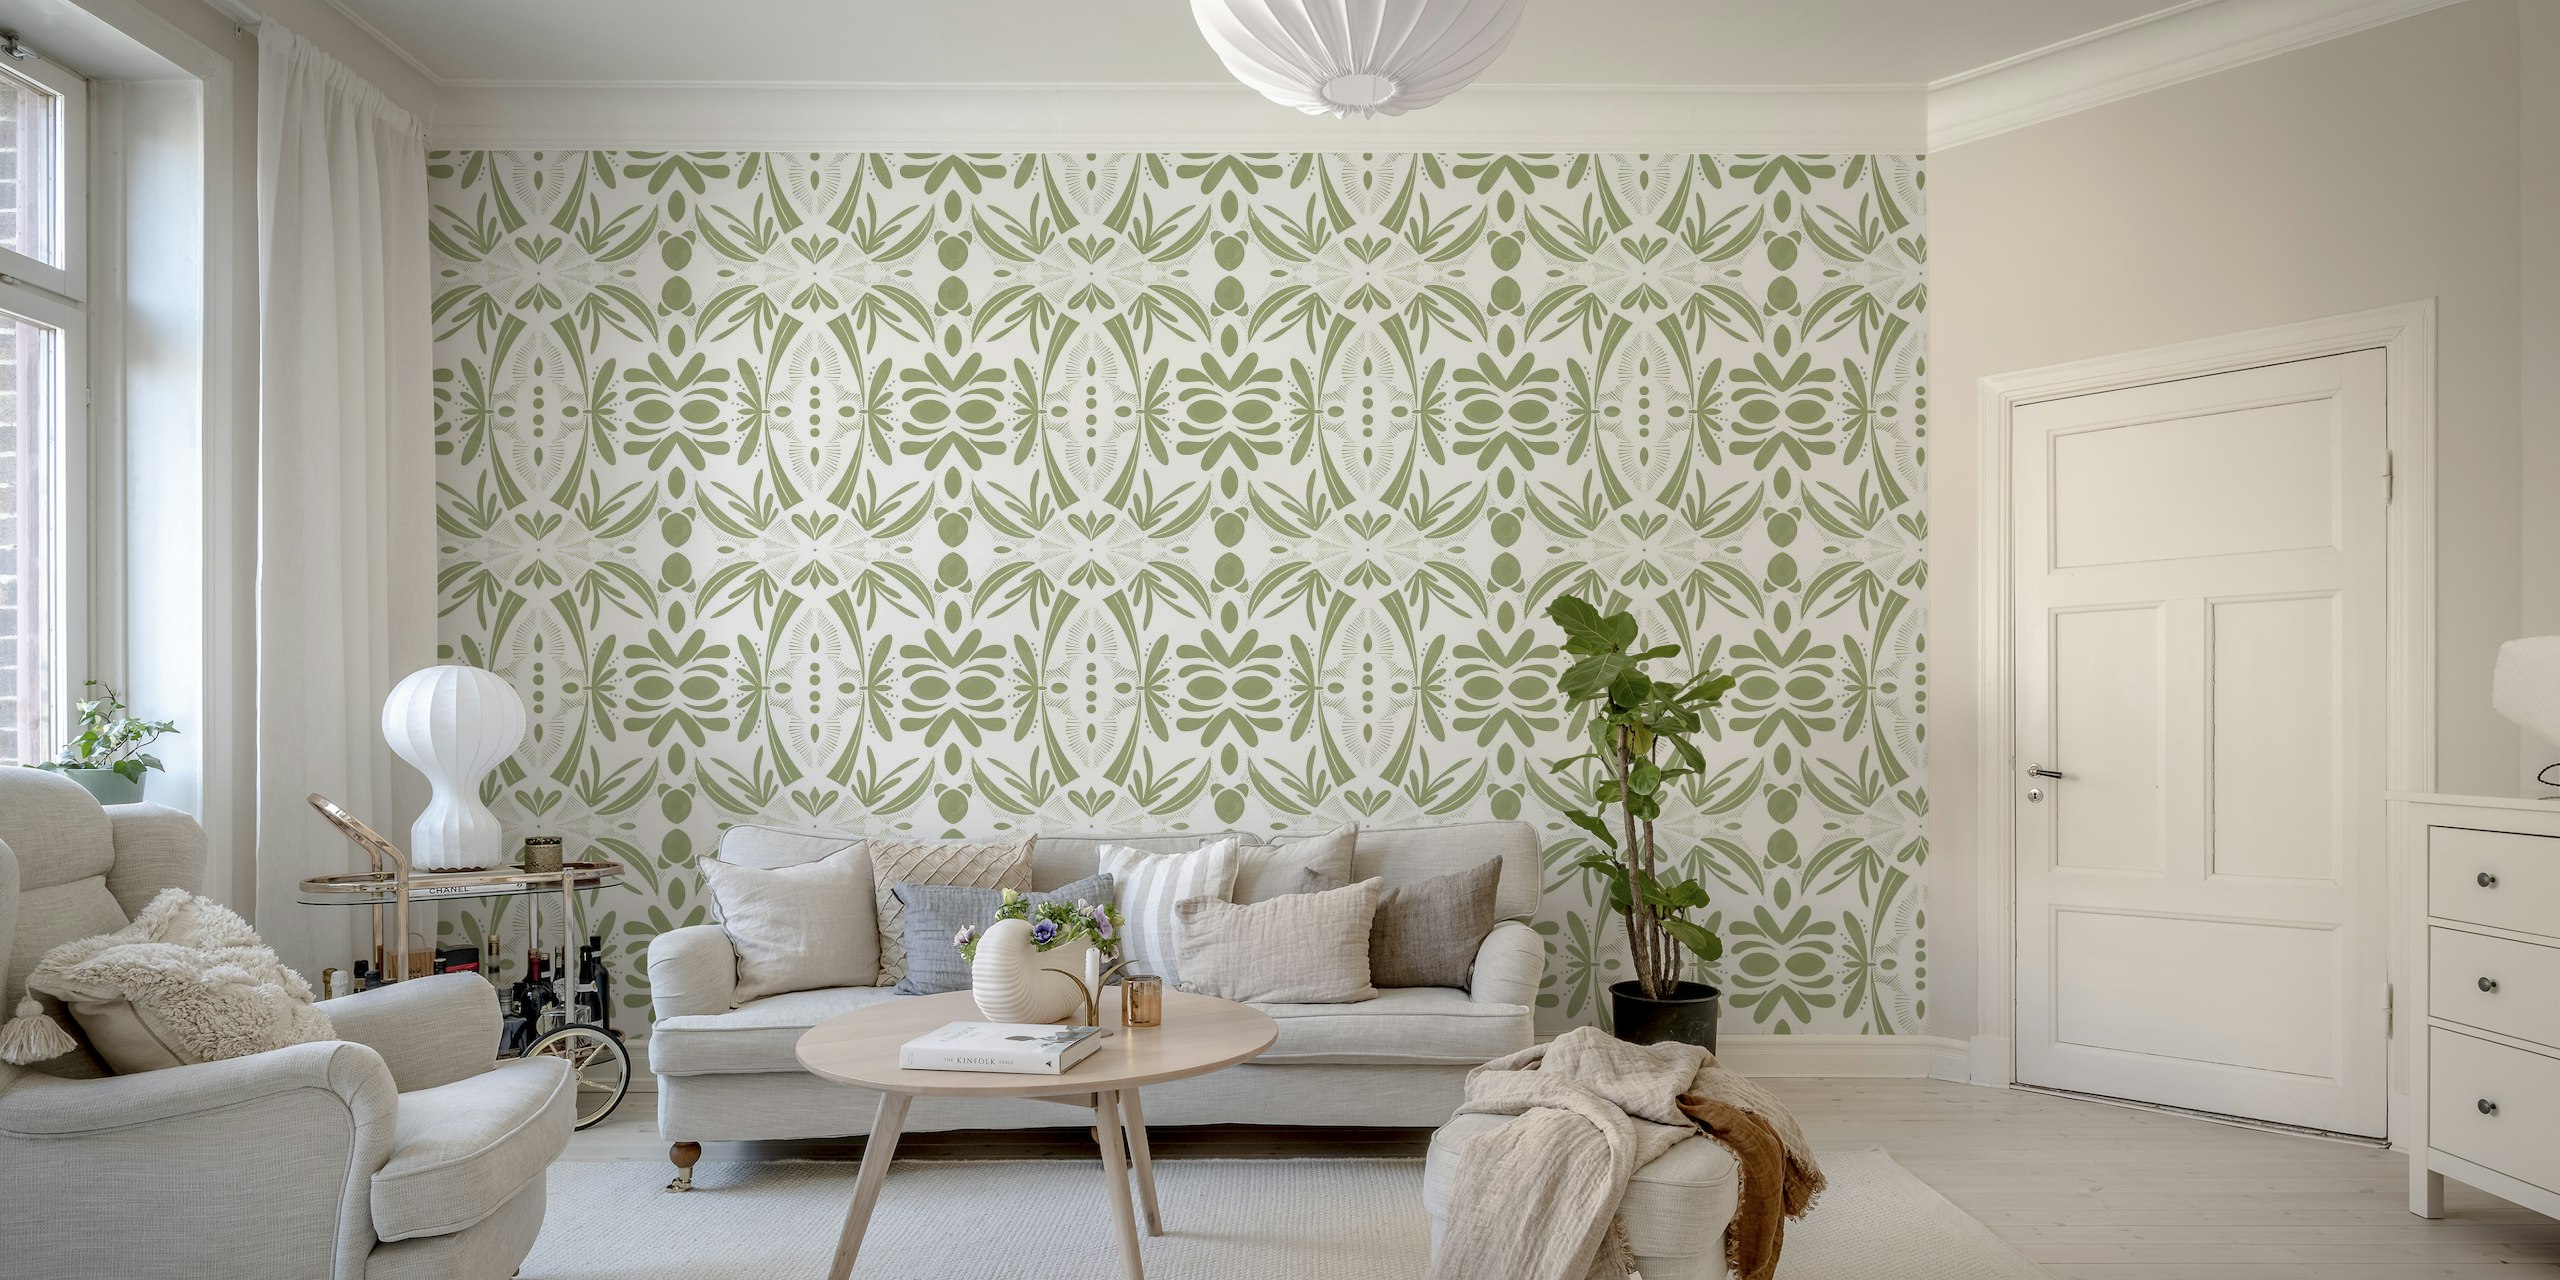 Green modern shapes tiles B tapeta